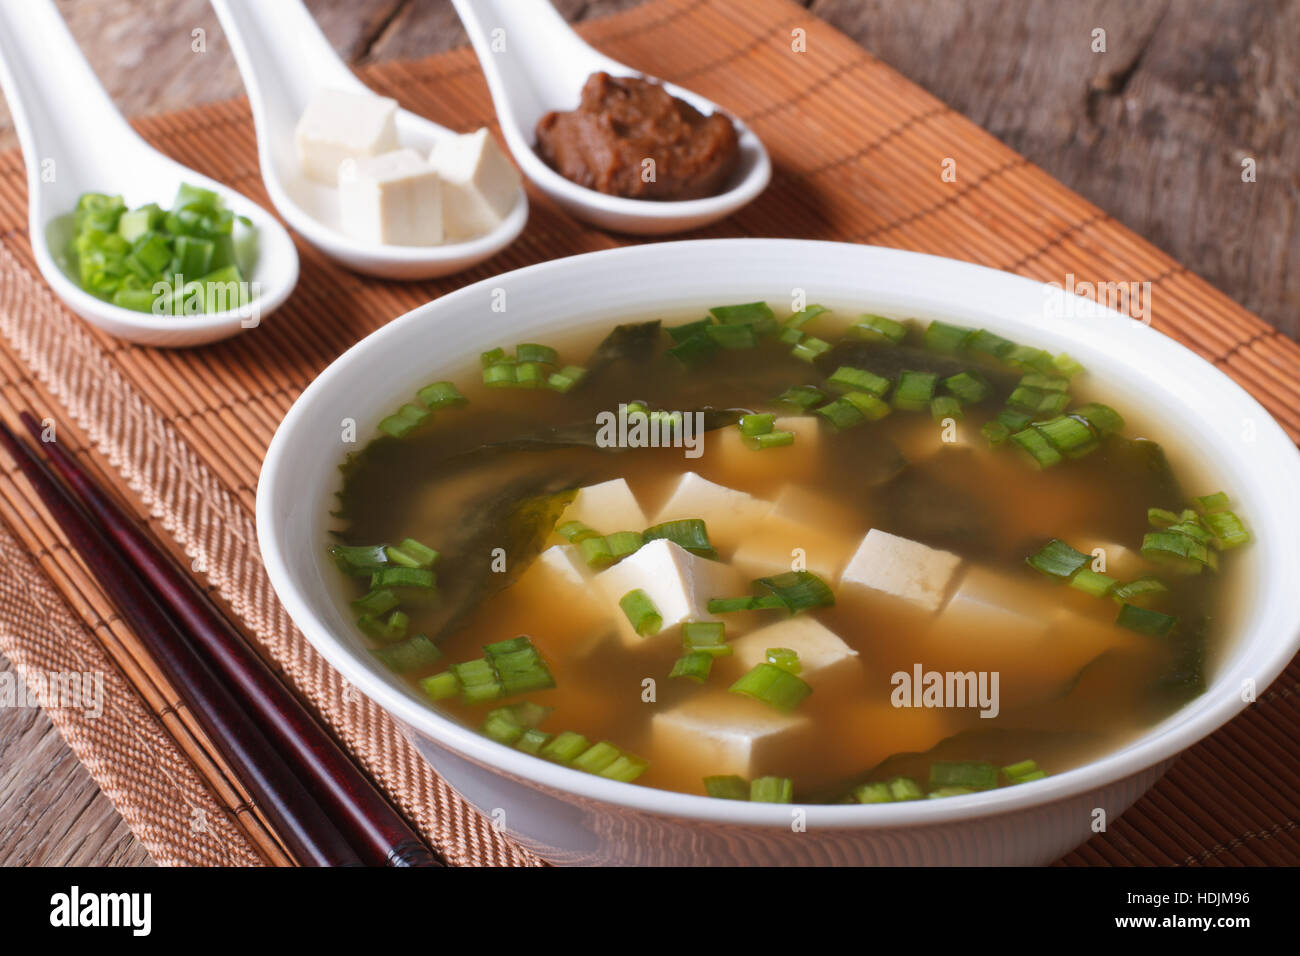 Giapponese zuppa di miso in una ciotola bianca e gli ingredienti